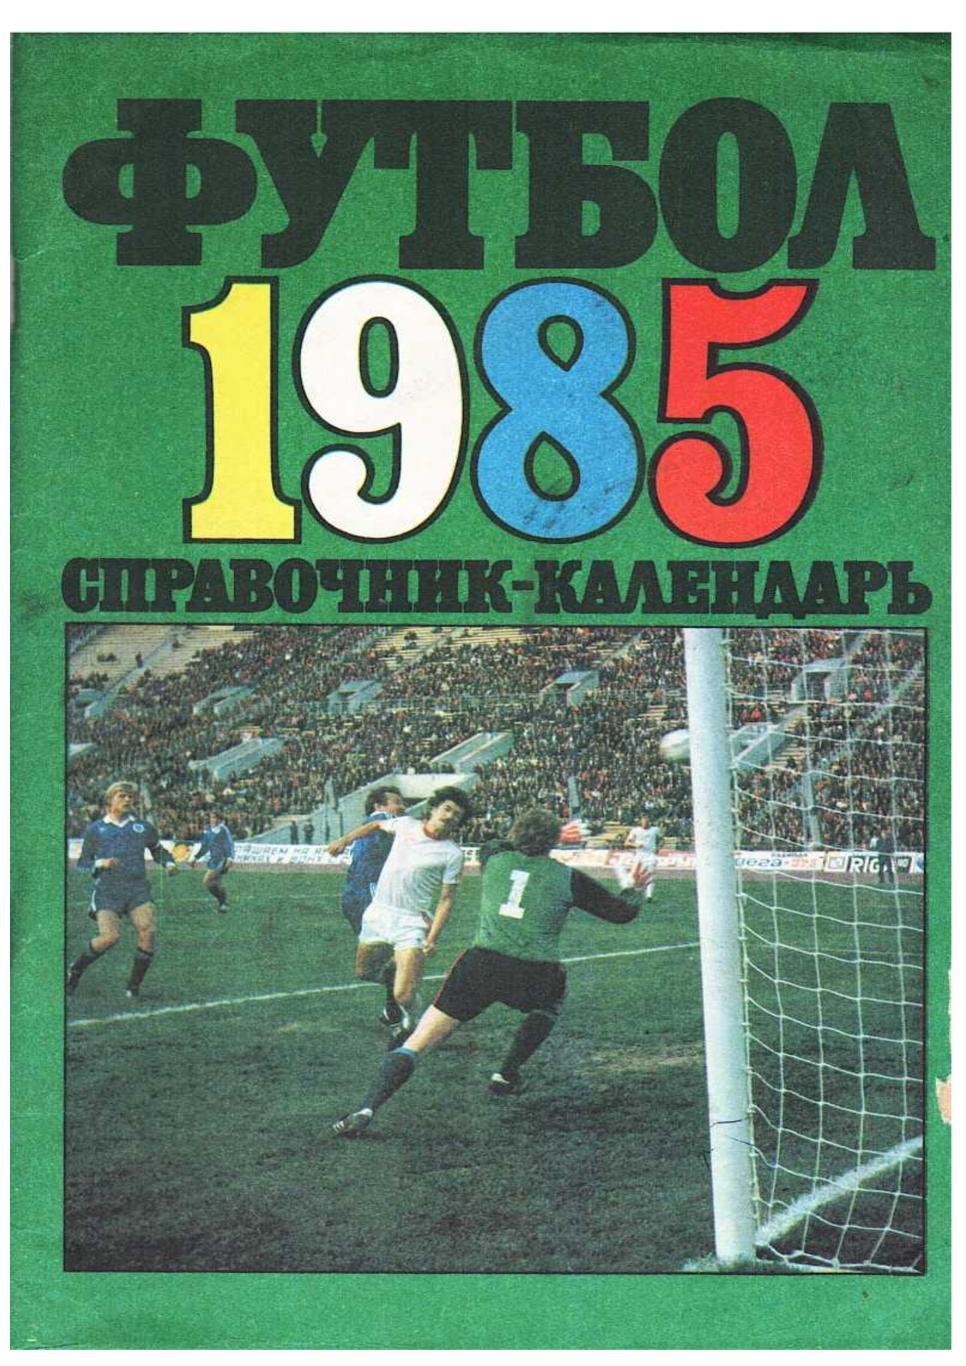 Футбол 1985. Справочник-календарь. Москва 1985.